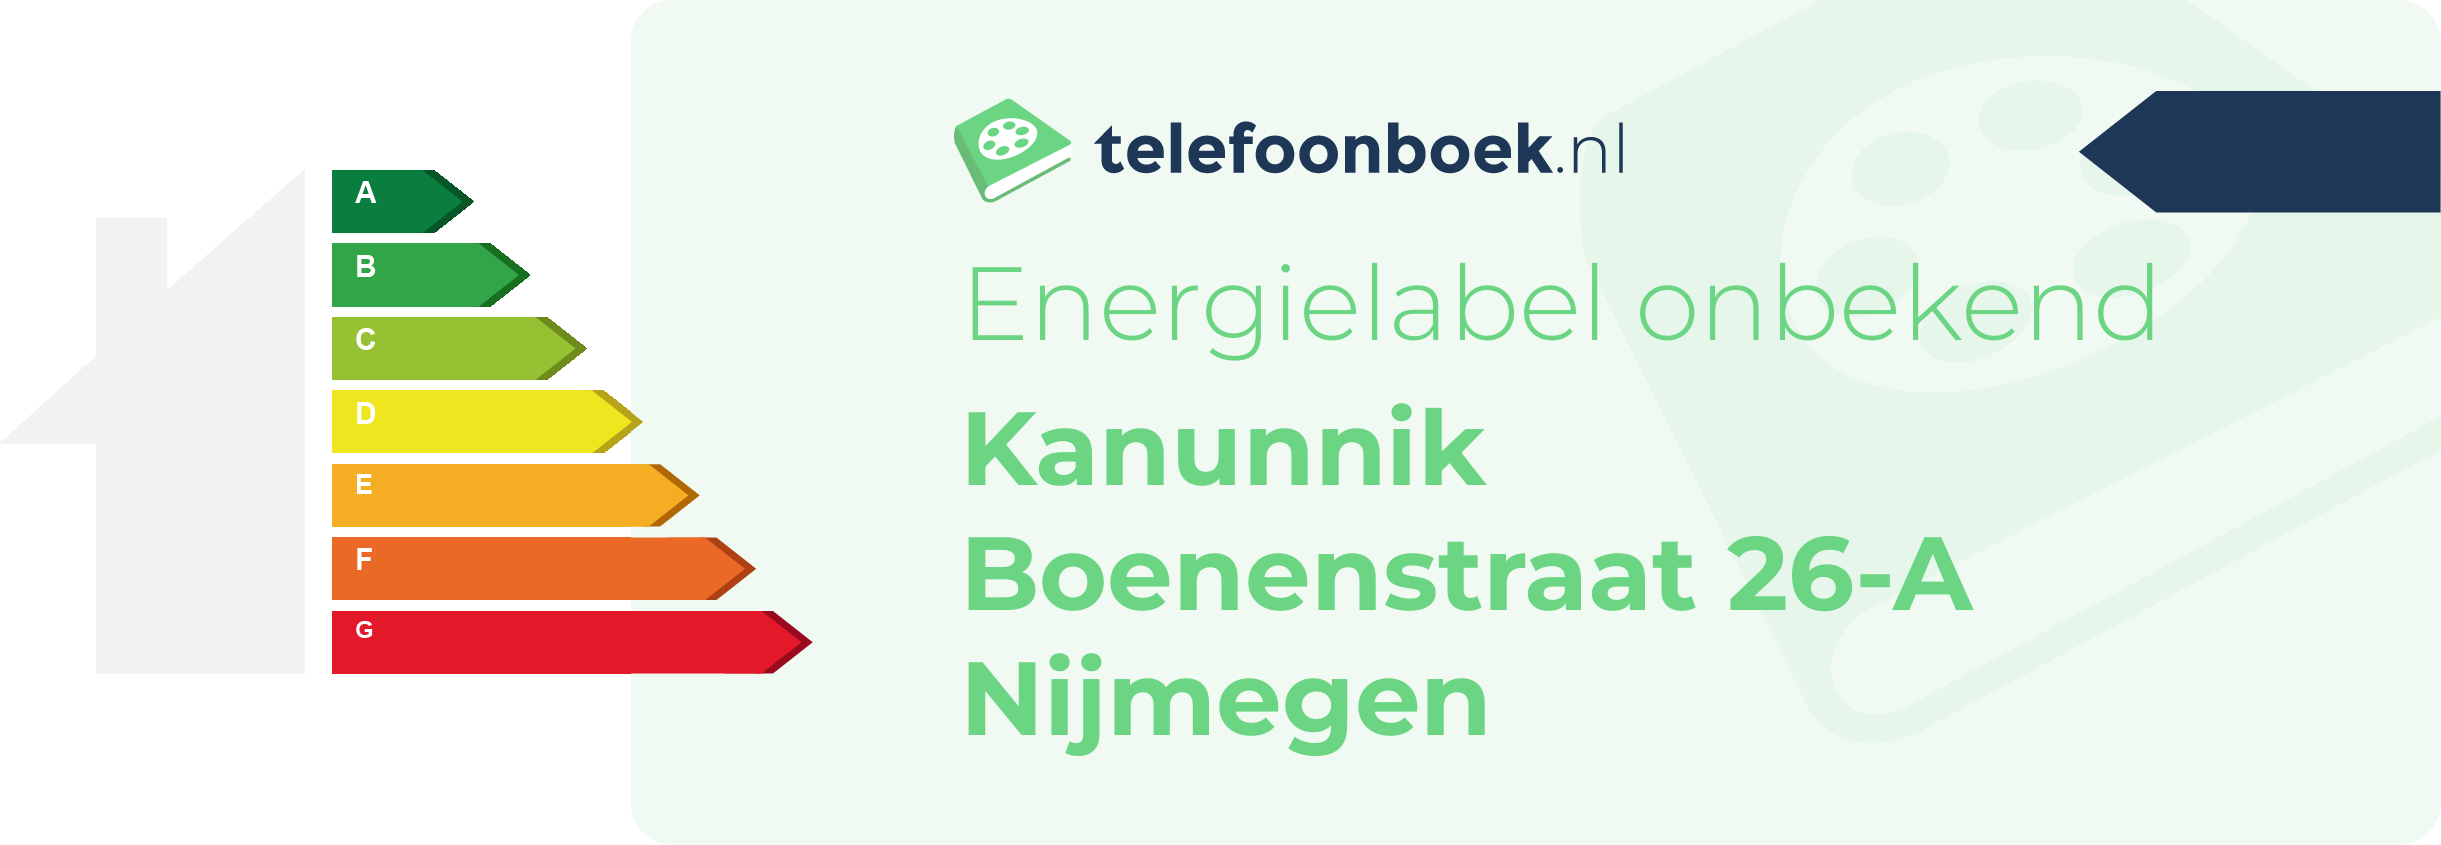 Energielabel Kanunnik Boenenstraat 26-A Nijmegen